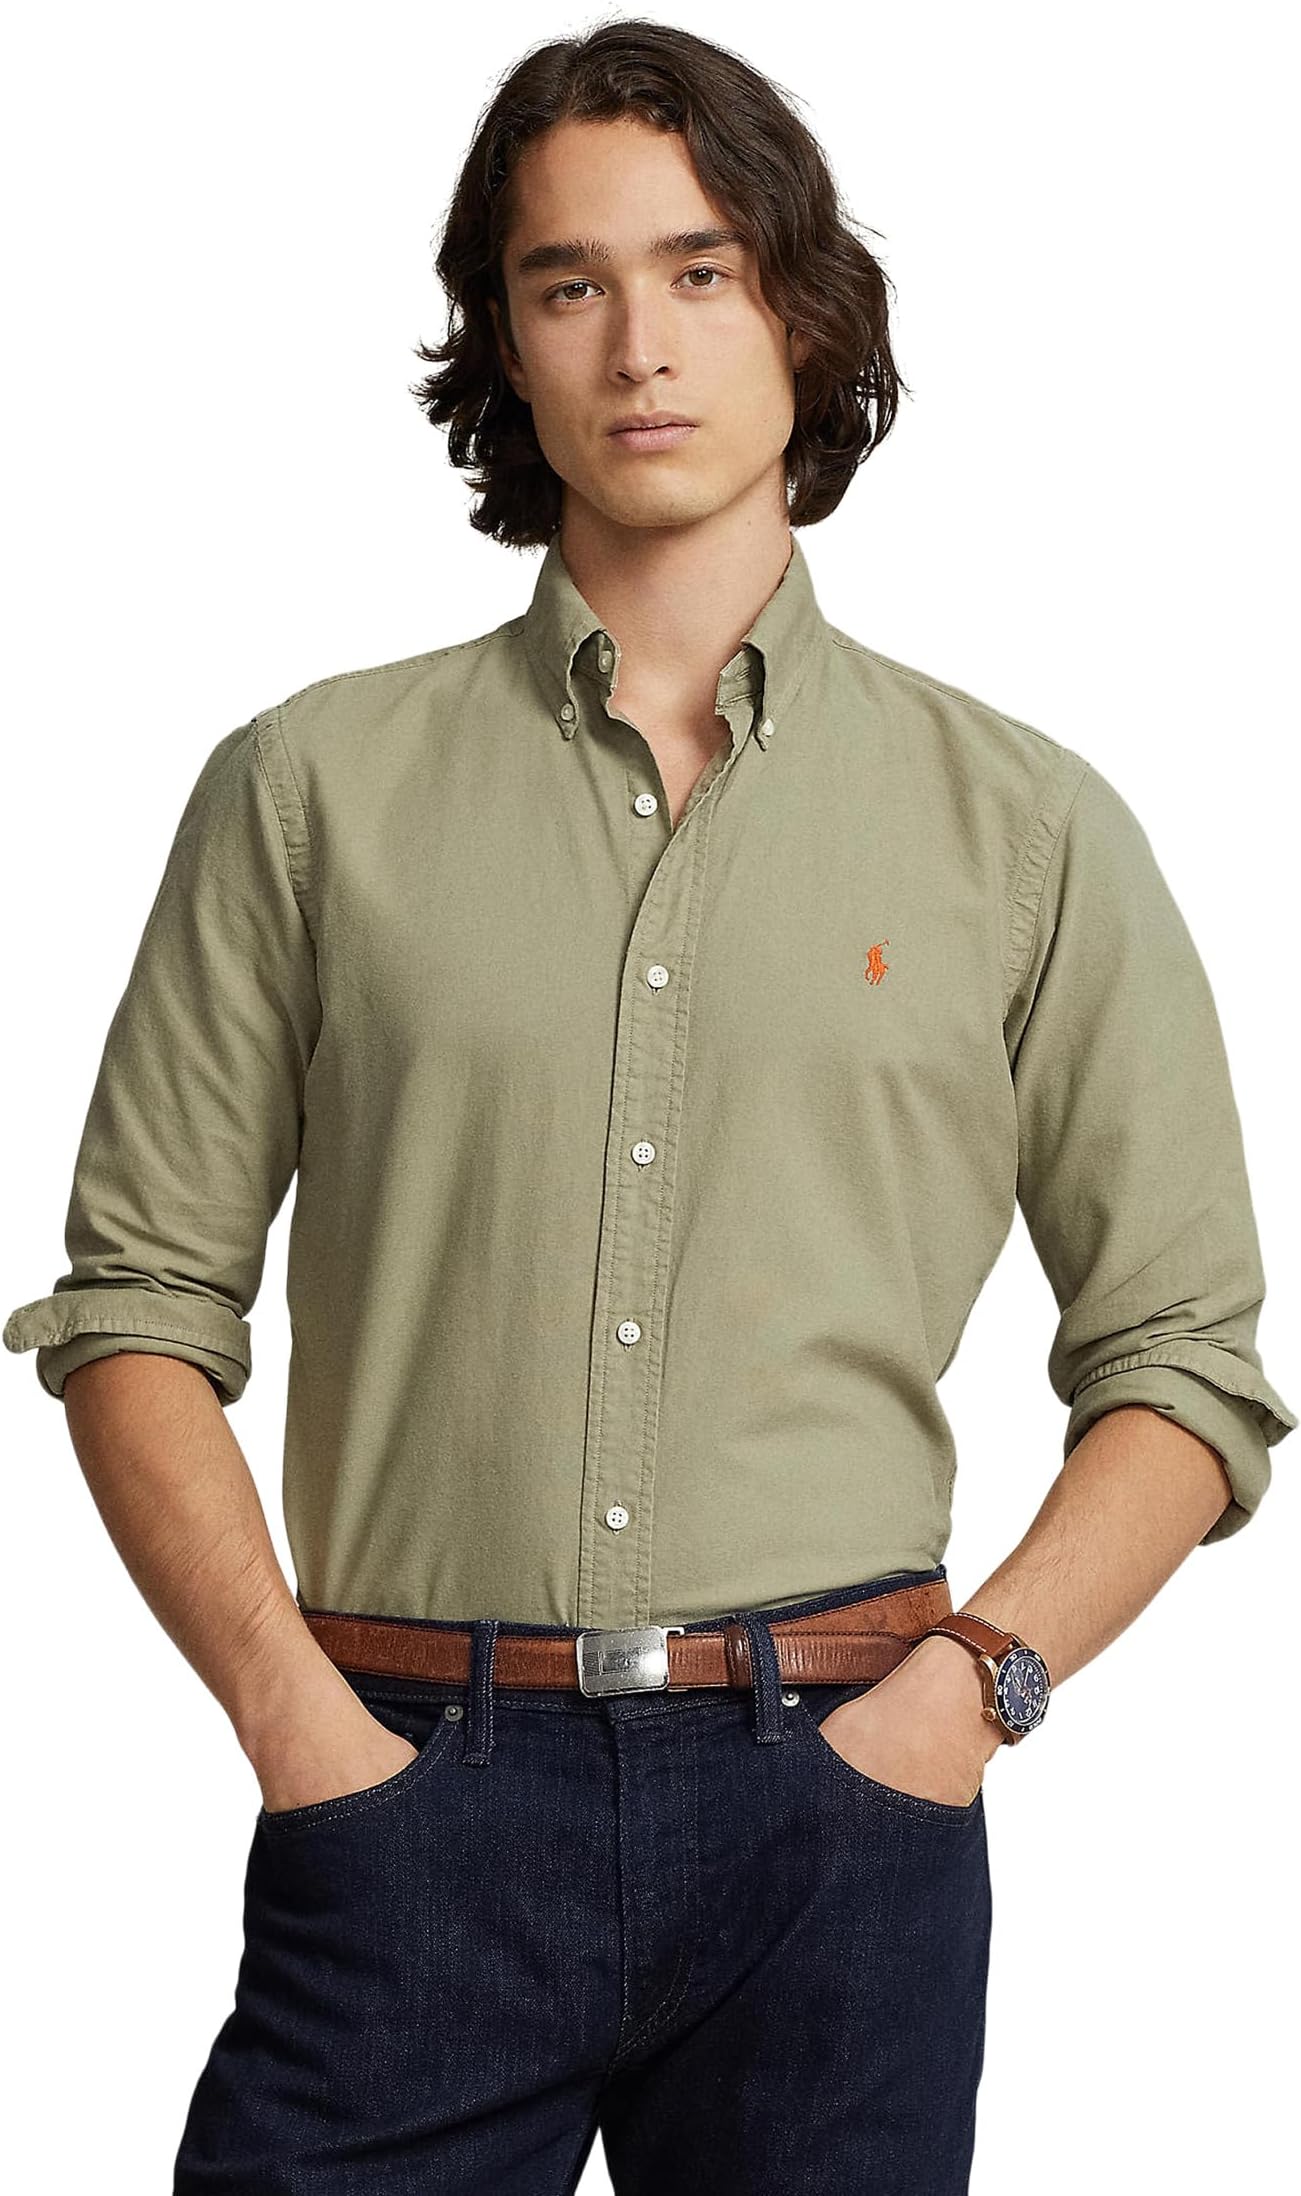 Оксфордская рубашка, окрашенная в готовой одежде Polo Ralph Lauren, цвет Sage Green футболка с принтом boxy crewneck polo ralph lauren цвет sage green